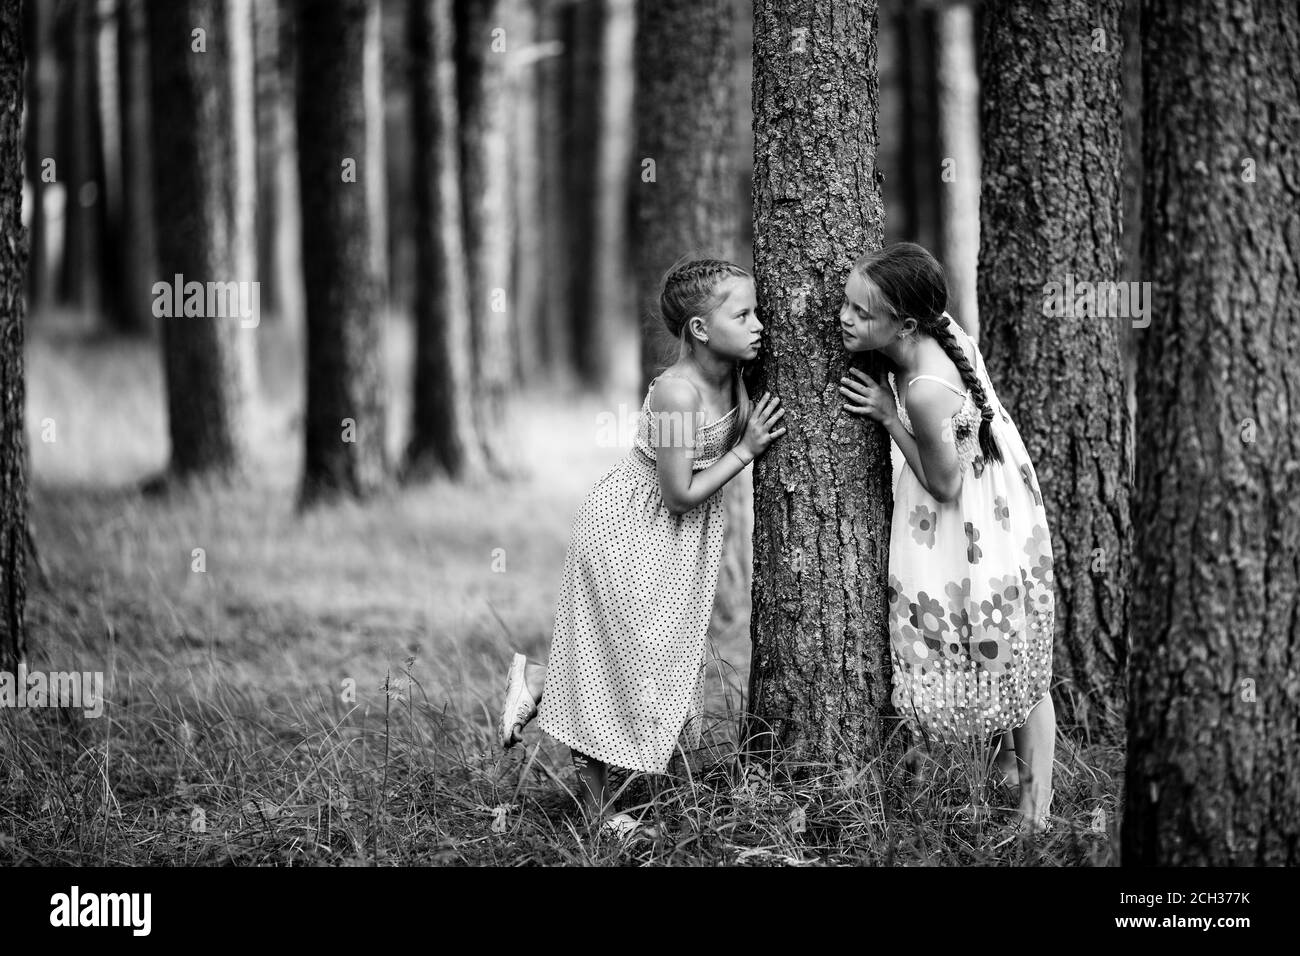 Deux petites filles dans le parc. Photo en noir et blanc. Banque D'Images